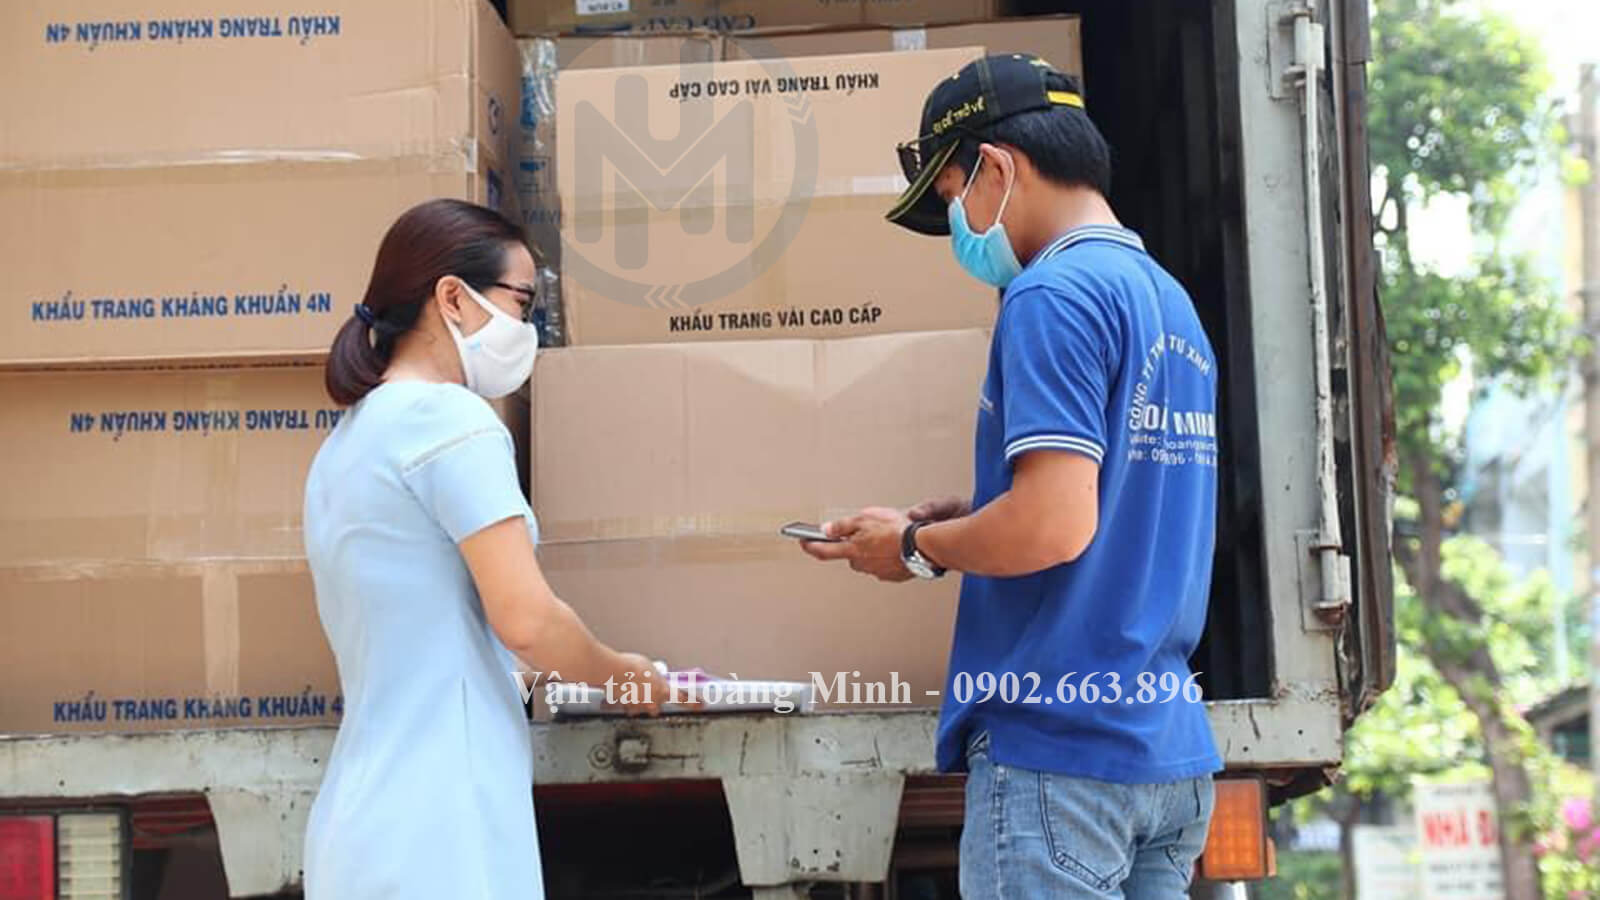 Những lợi ích bạn nhận được khi hợp tác với Vận tải Hoàng Minh về dịch vụ cho thuê xe tải chở hàng Quận Phú Nhuận